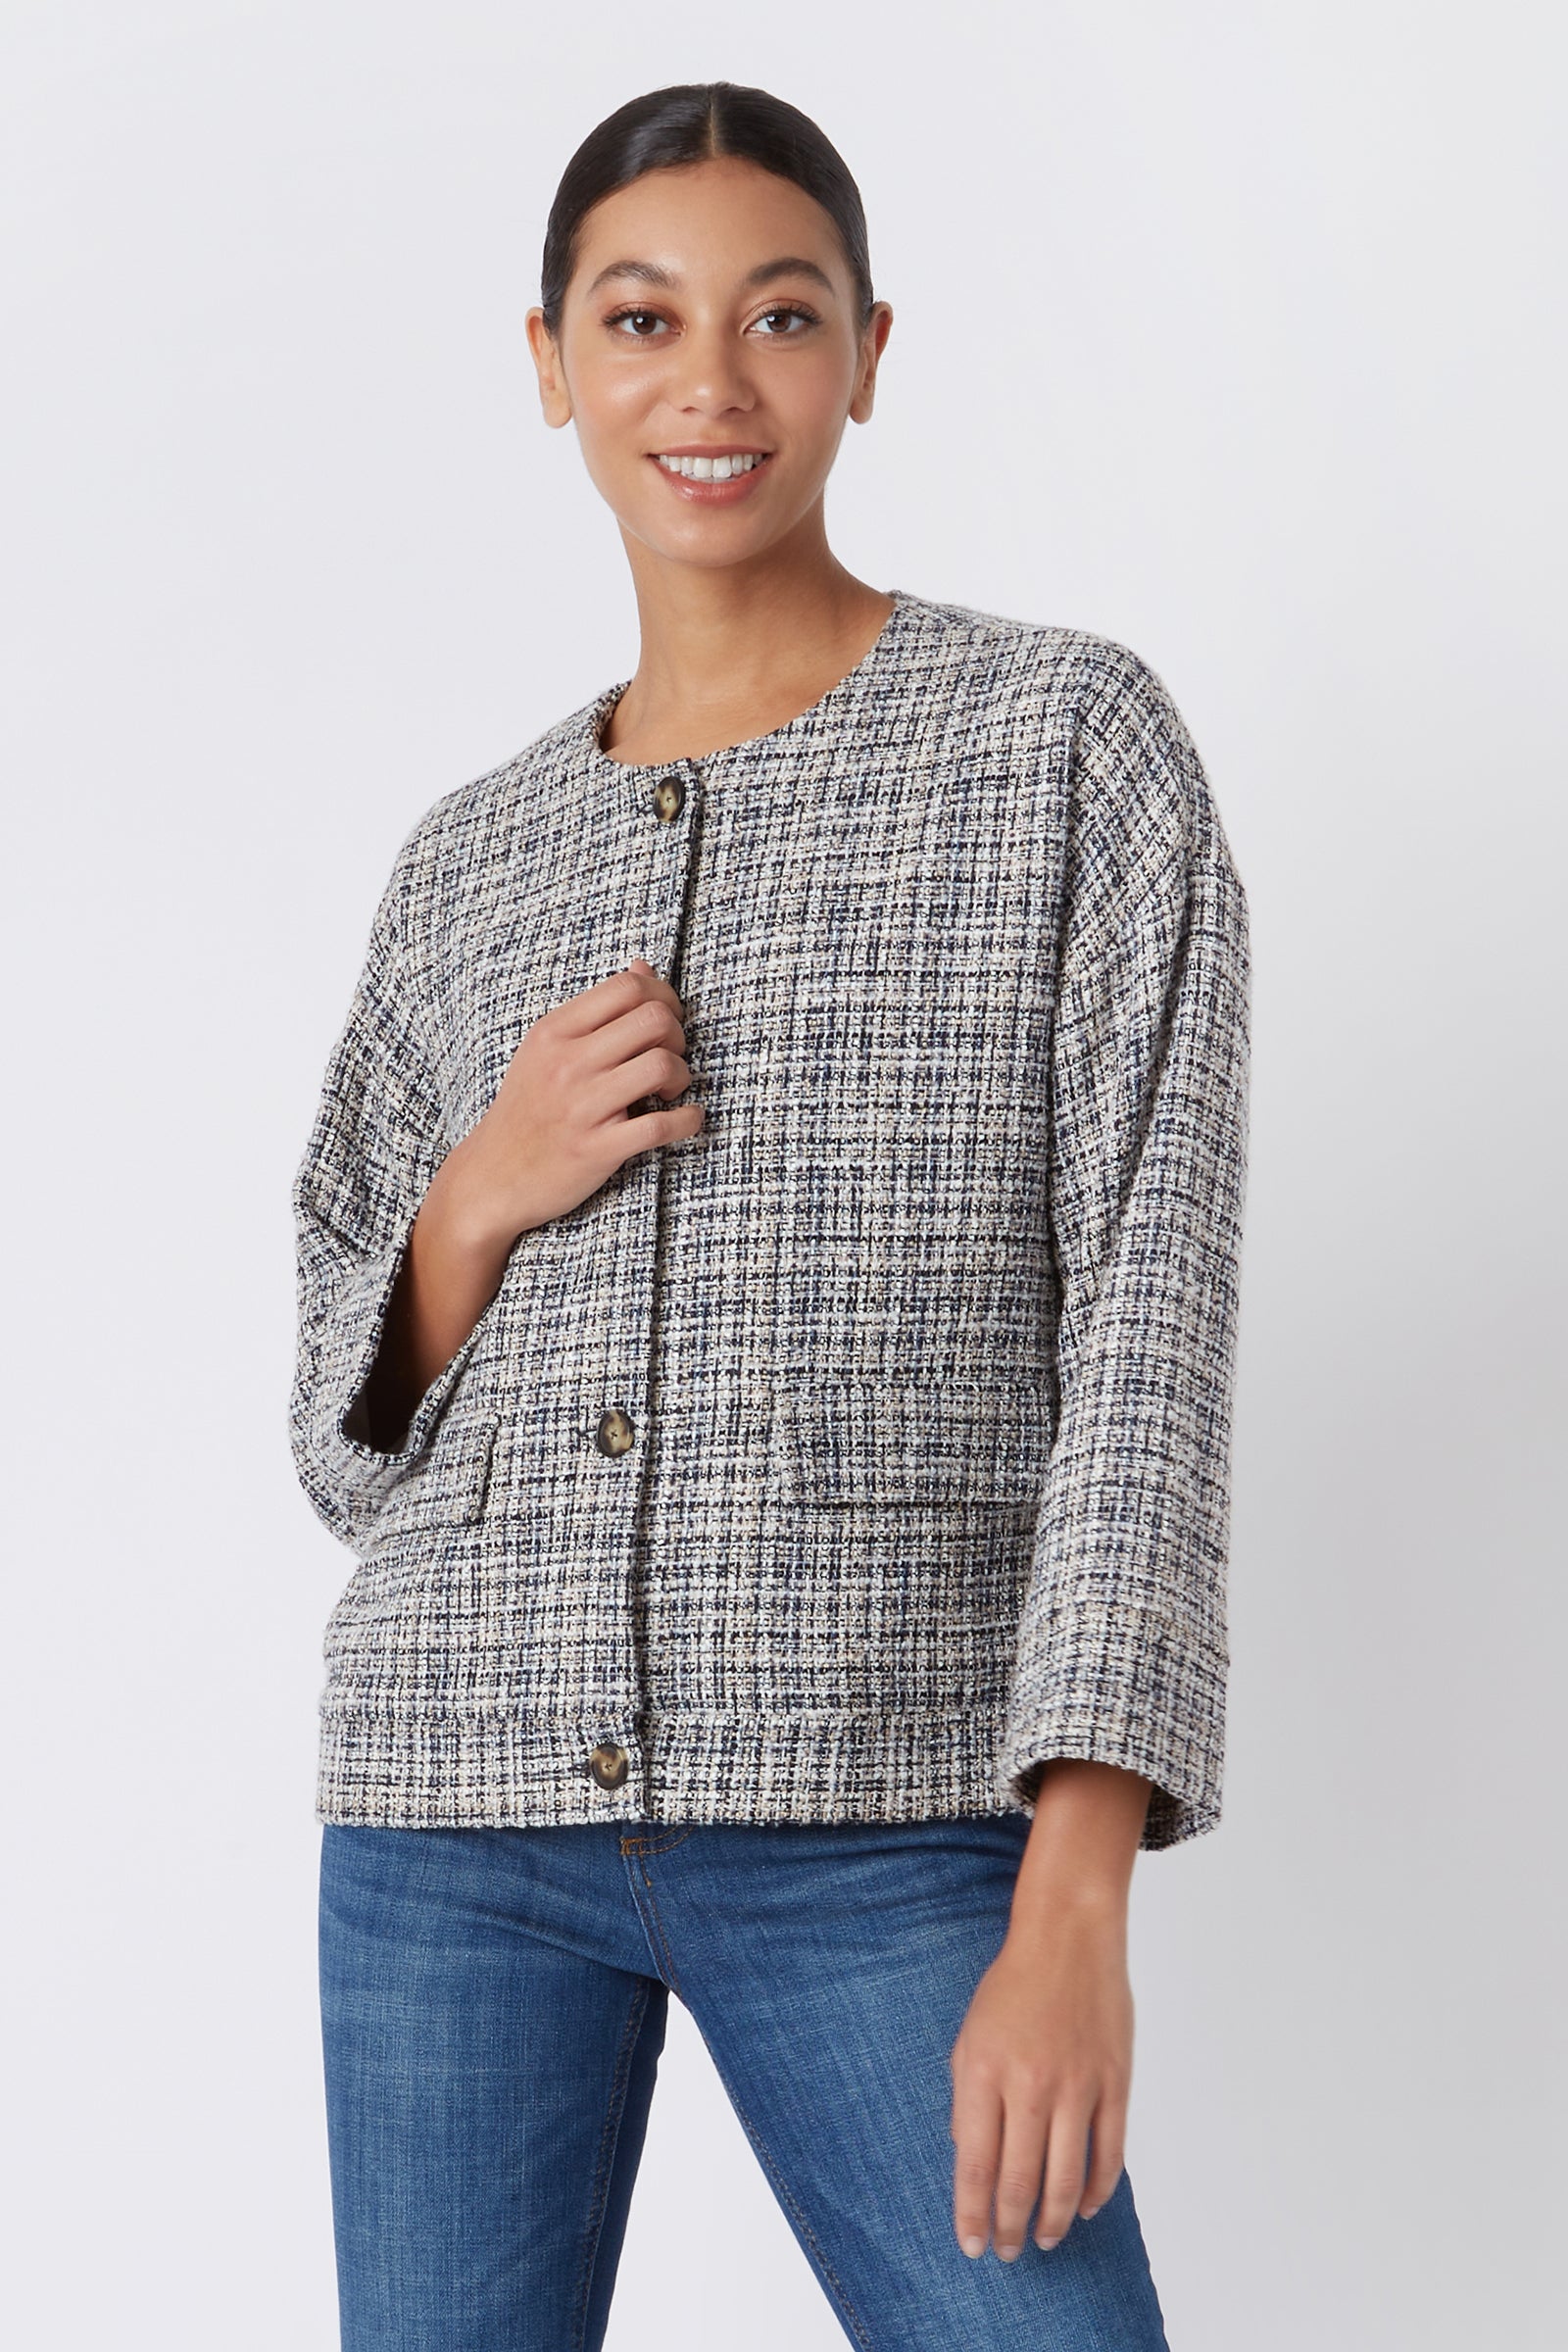 Sienna Tweed Jacket in Spanish Multi Tweed Italian Broadcloth – KAL RIEMAN